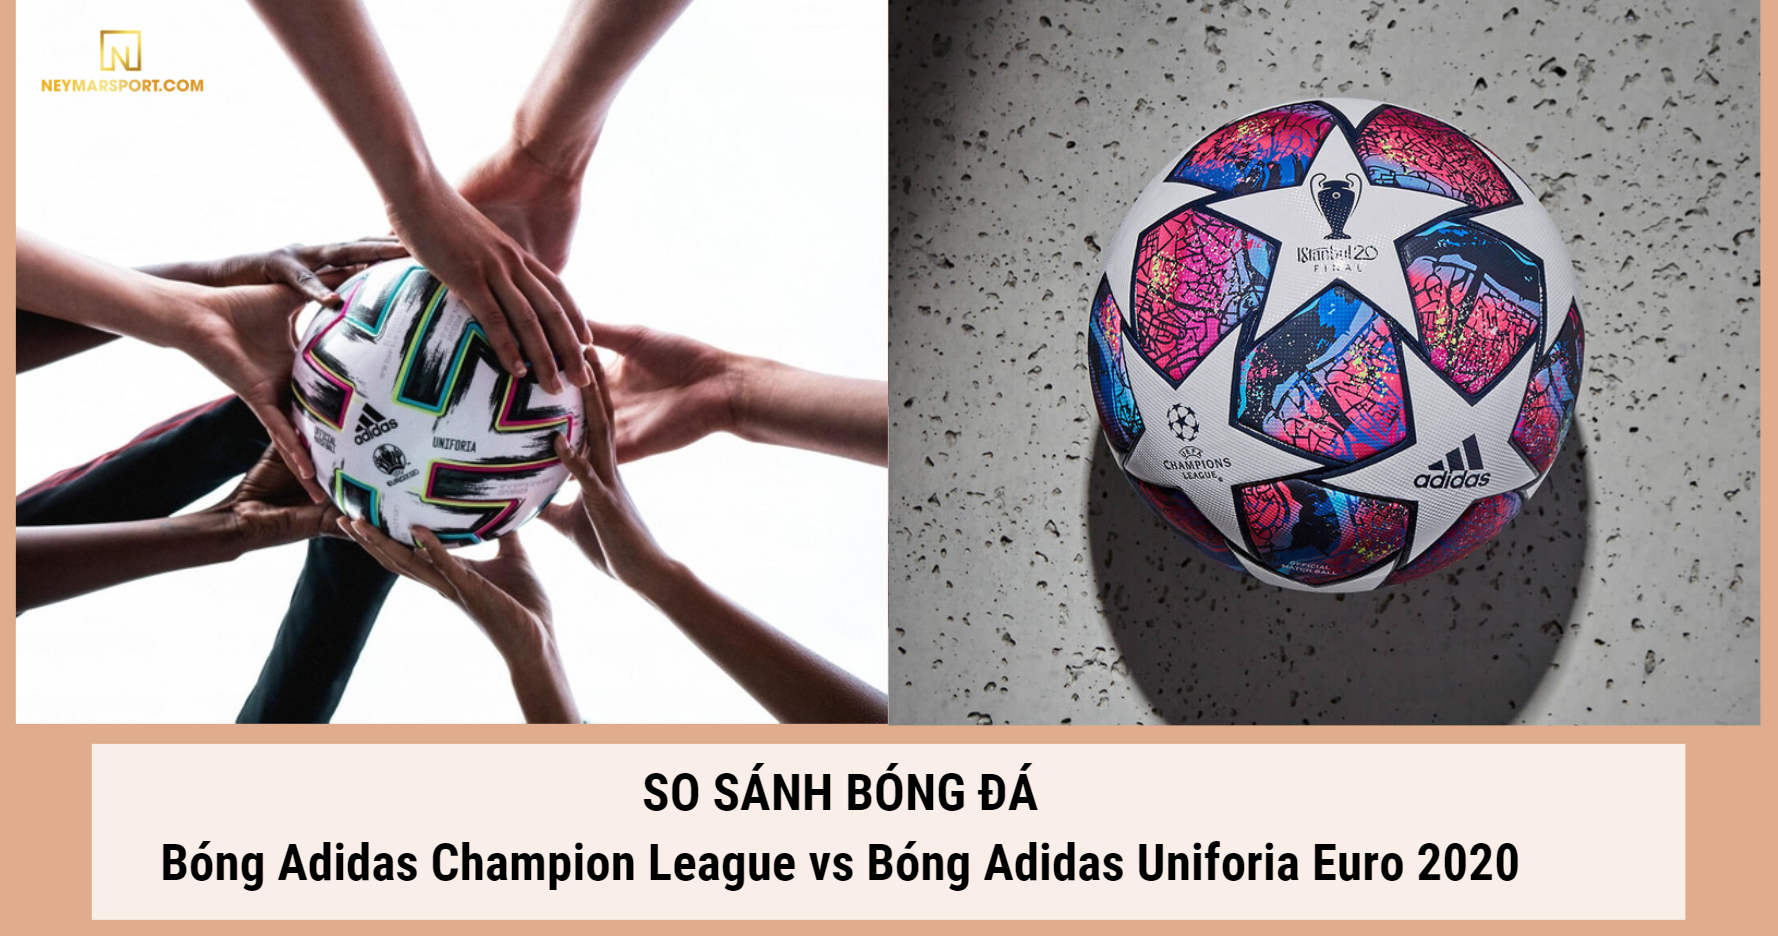 So sánh quả bóng đá Adidas Champion League và bóng Adidas Uniforia Euro 2020